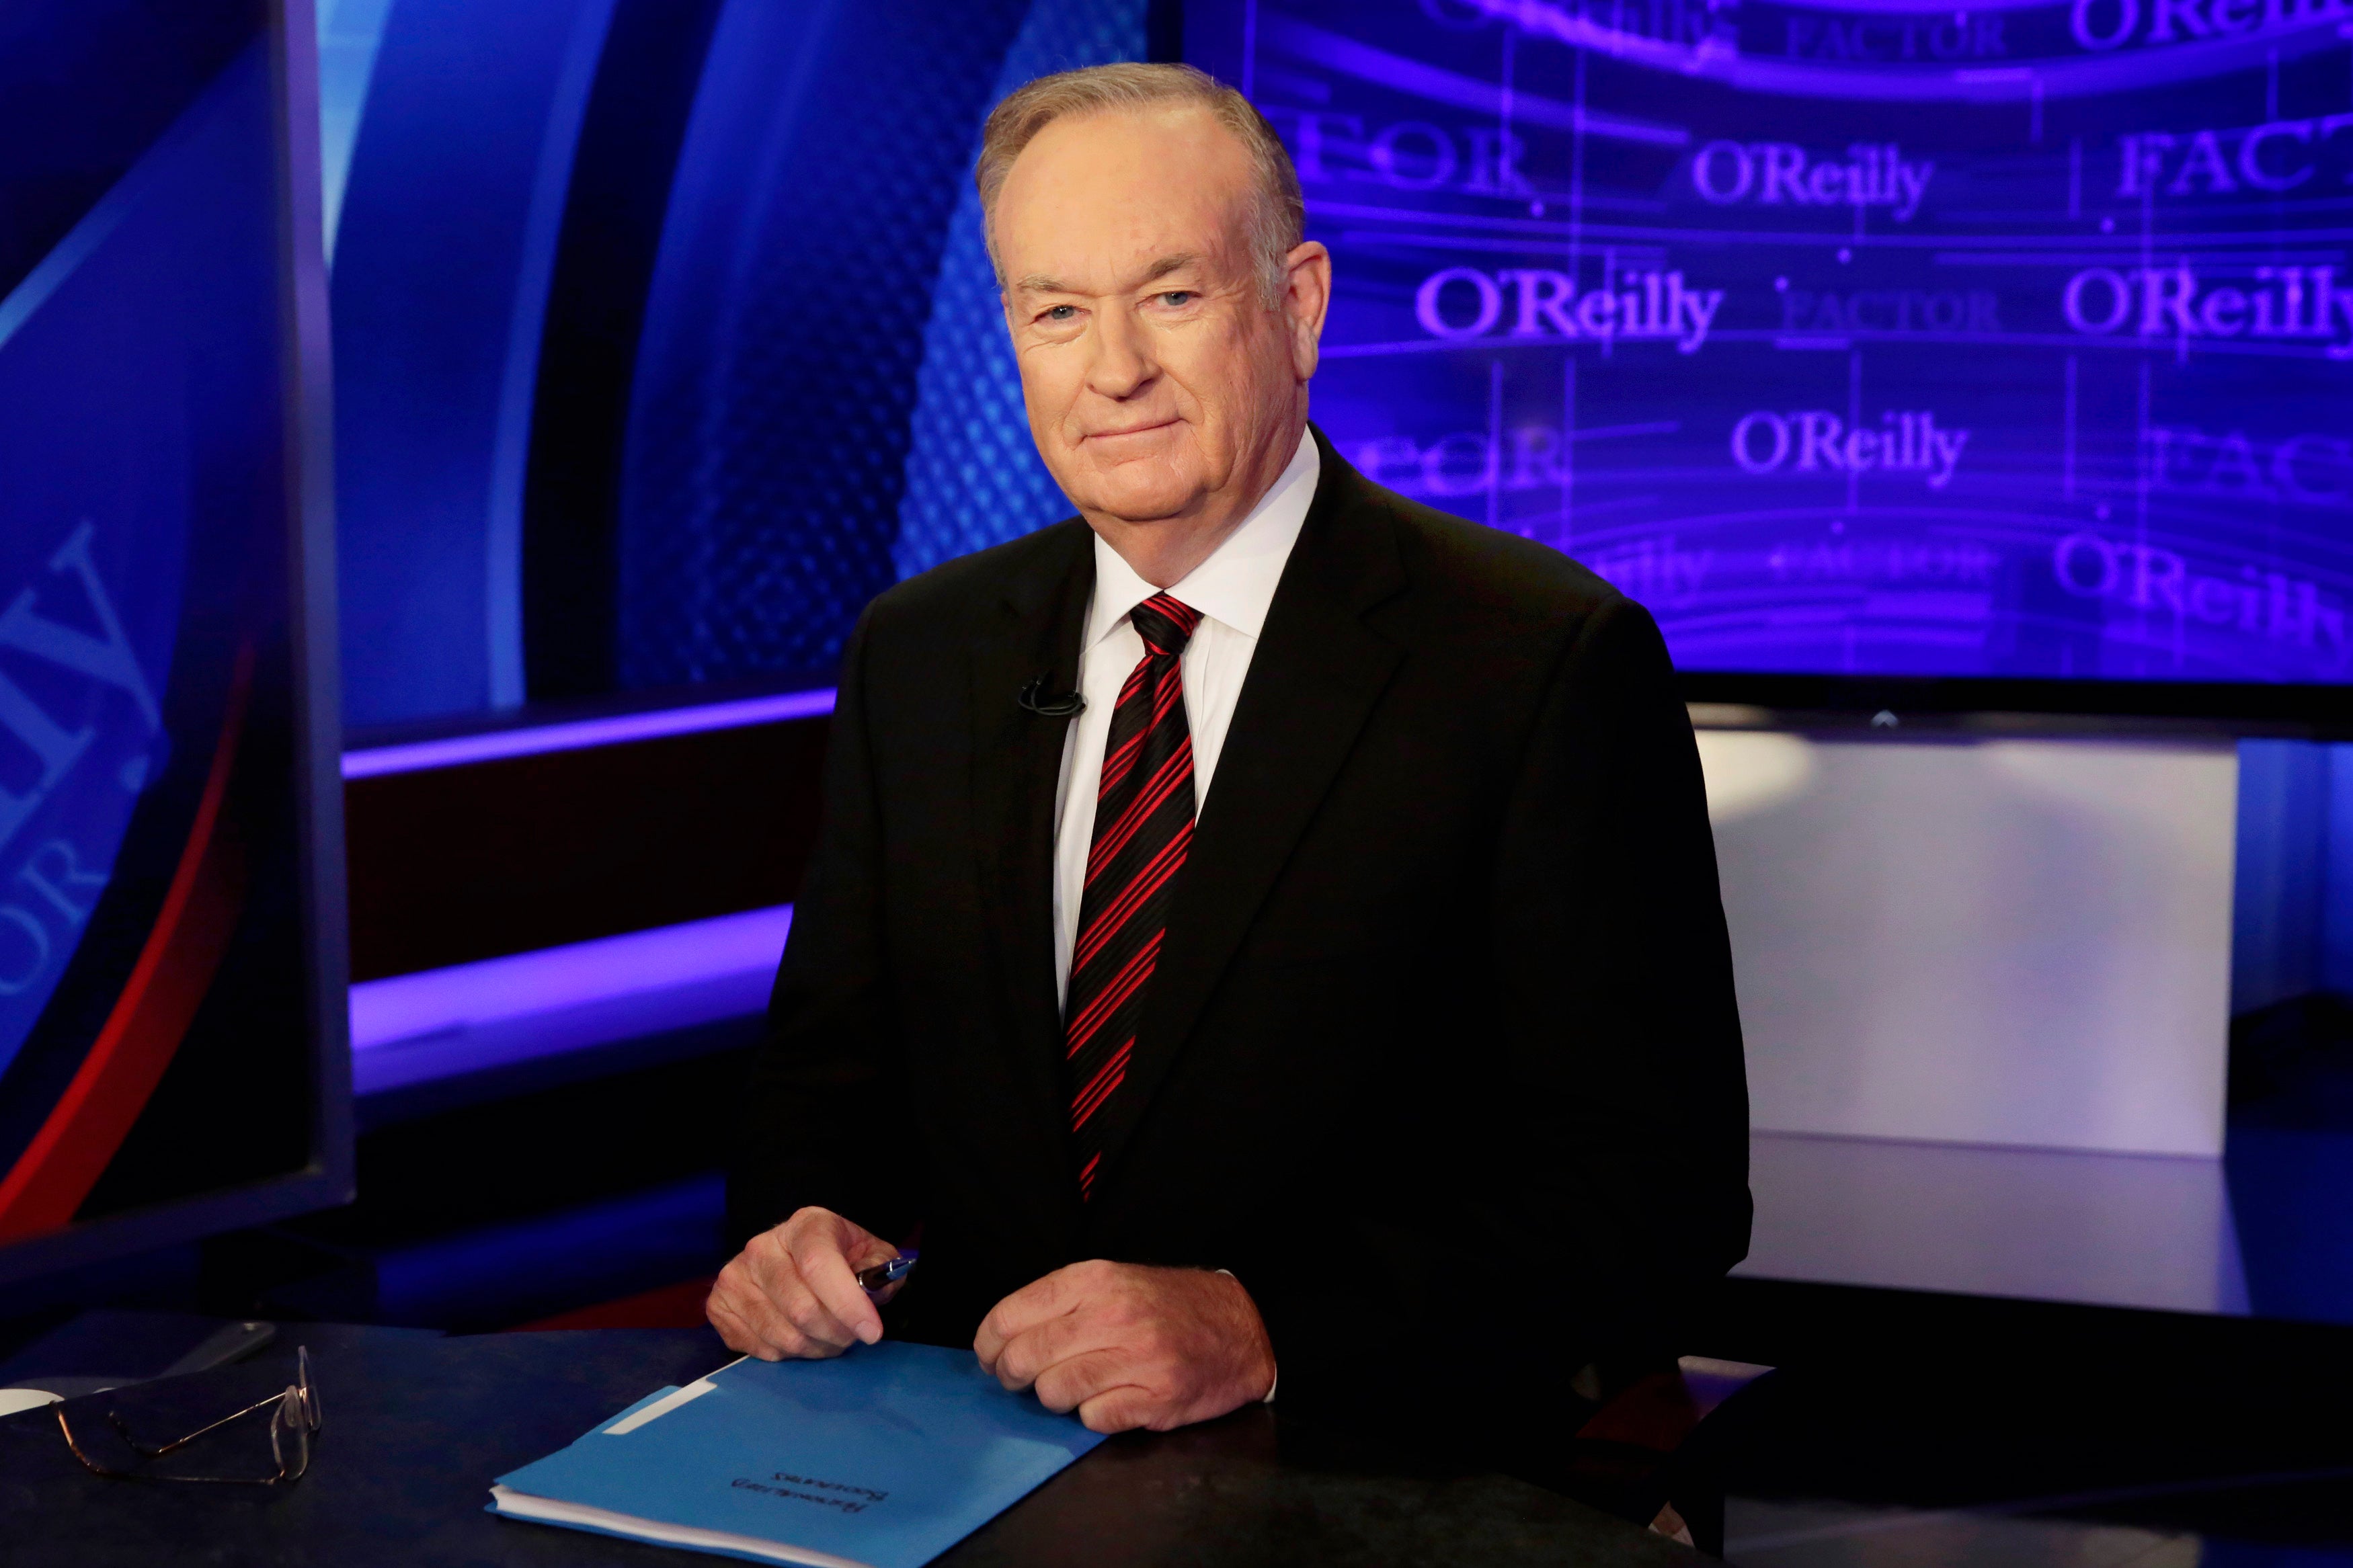 TV O'Reilly Accuser